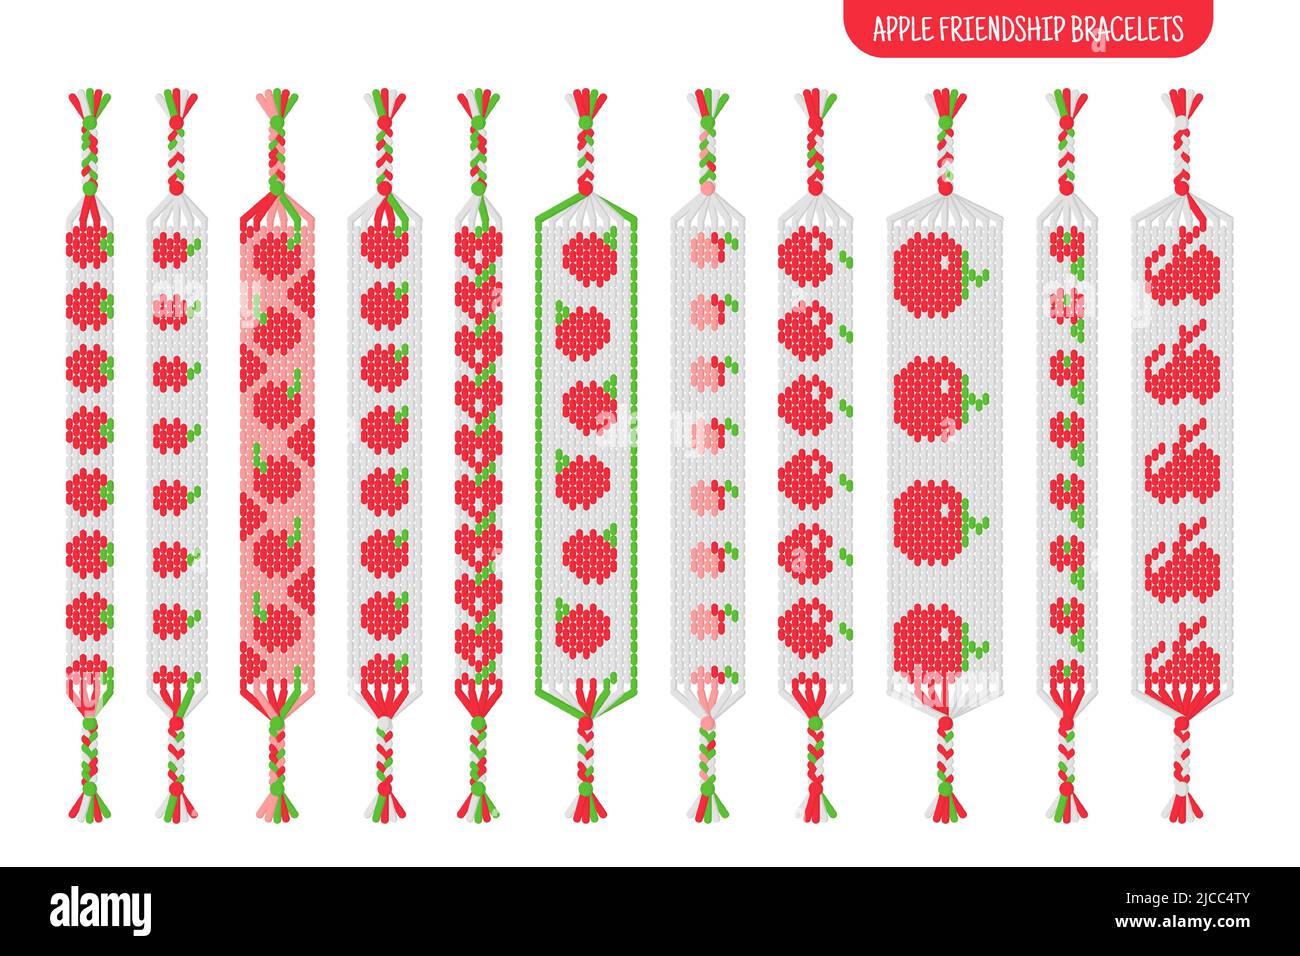 Bracciali di amicizia di mela rossa fatti a mano insieme di fili o perle. Macrama tutorial pattern normale. Illustrazione isolata del cartone animato vettoriale. Illustrazione Vettoriale